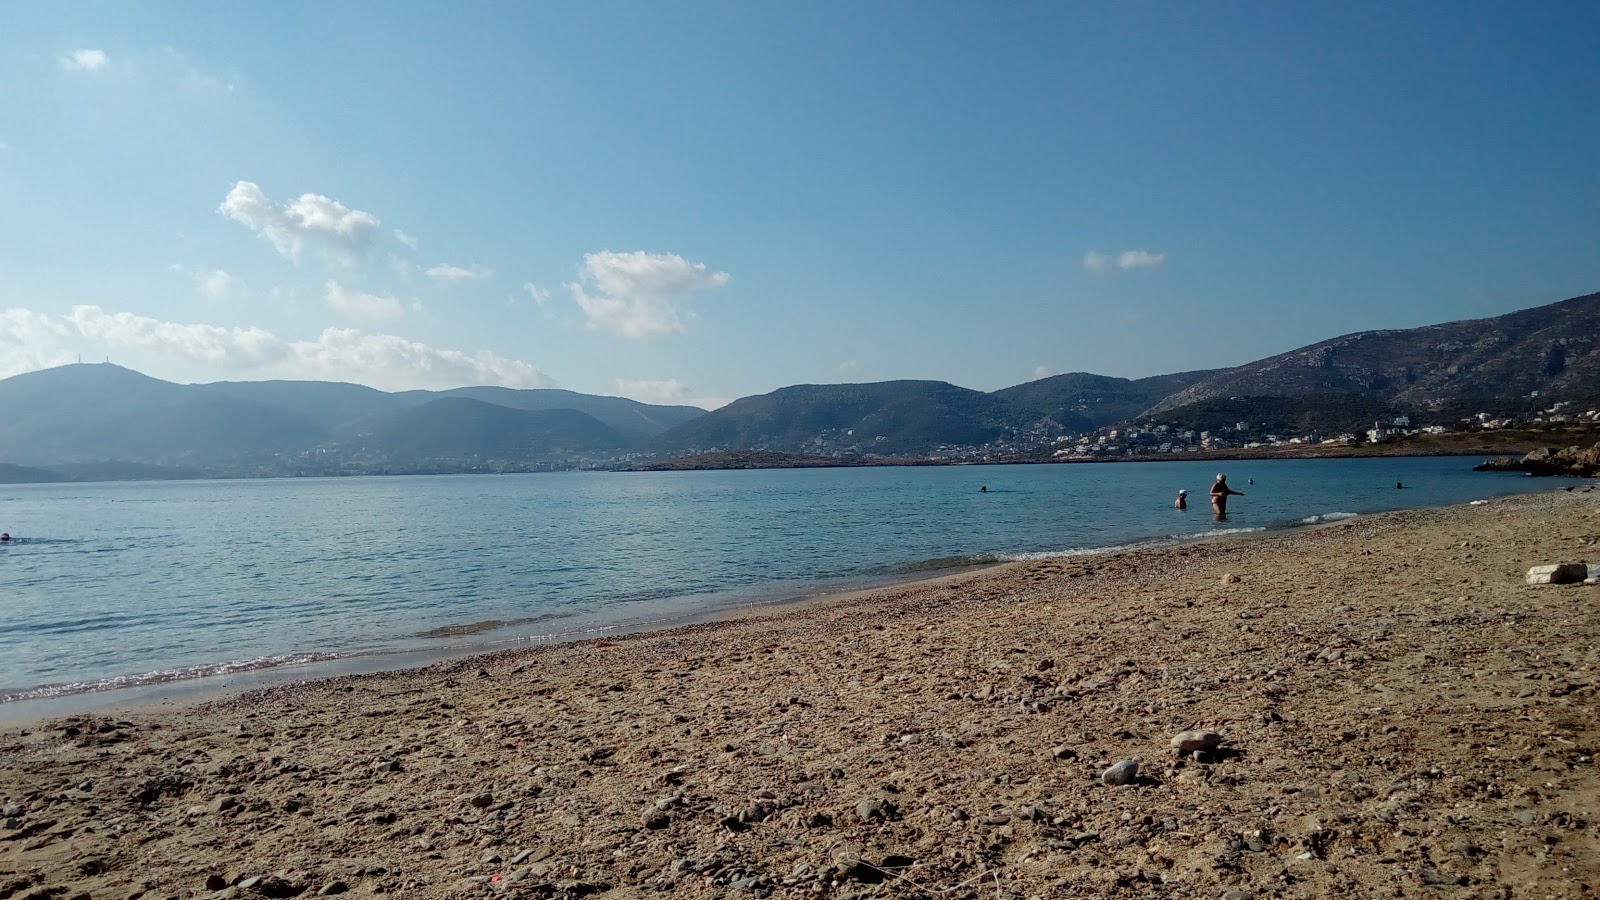 Agios Spiridonas'in fotoğrafı çakıl ile kum yüzey ile